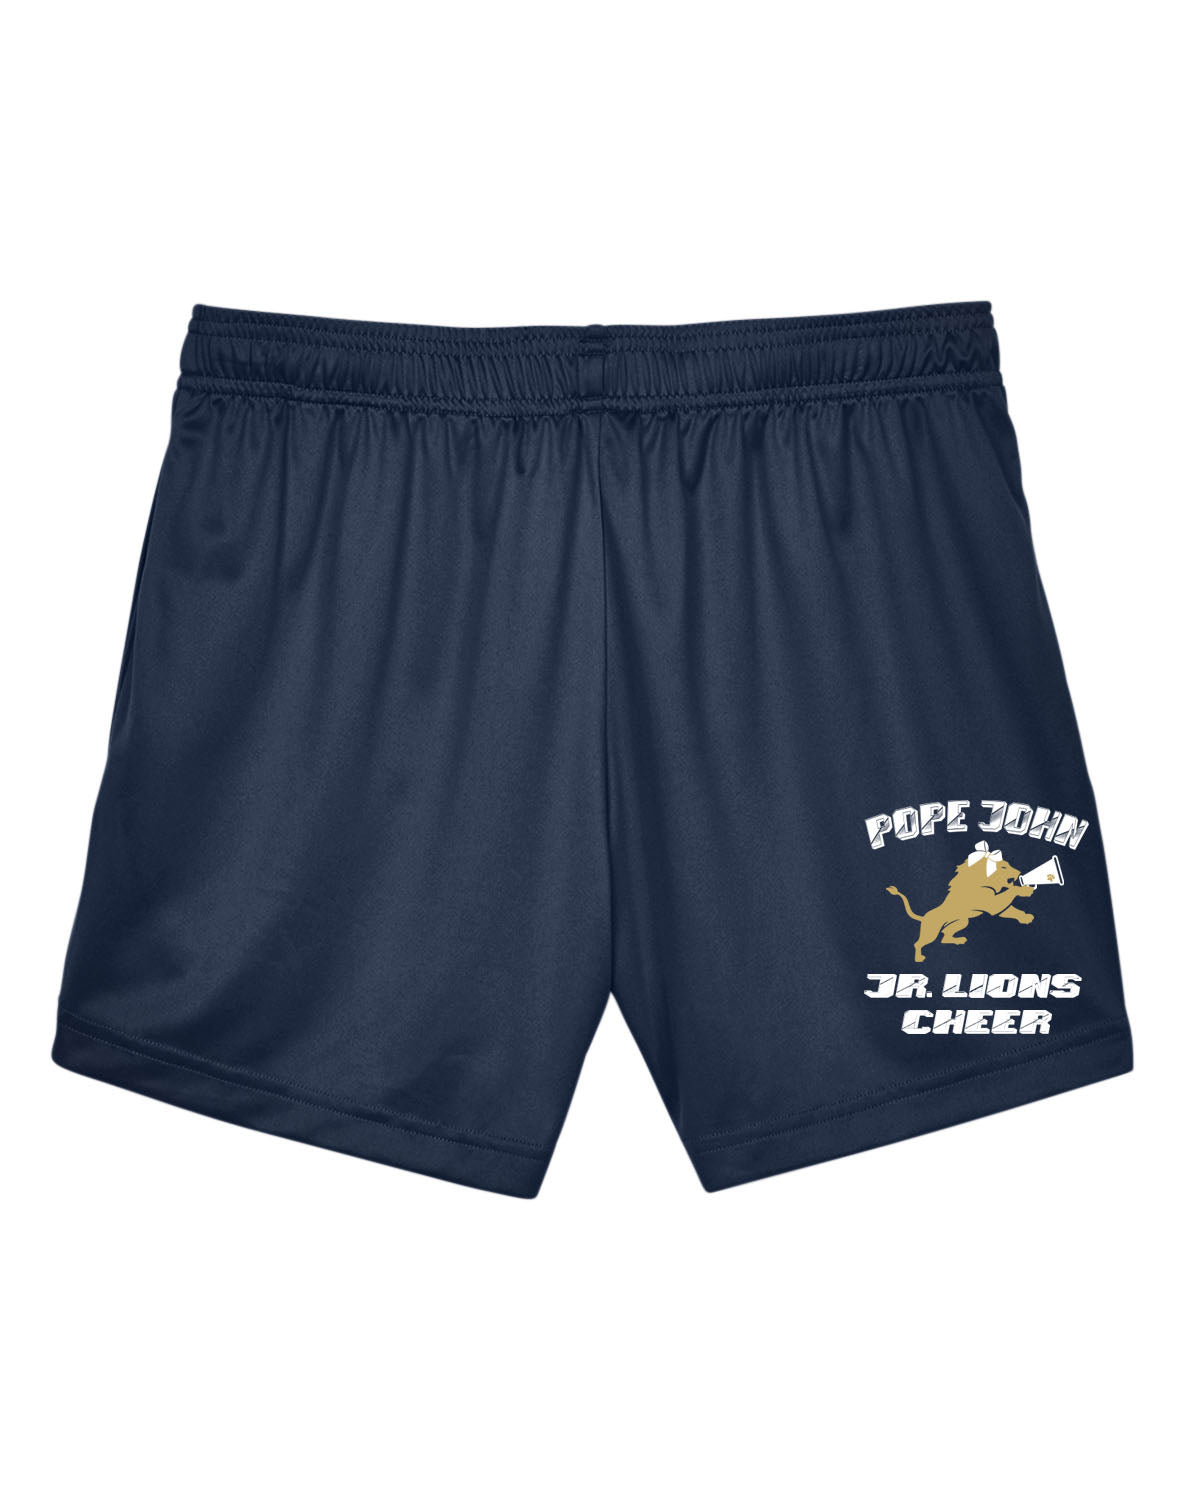 Custom Soffe Shorts - Slim Fit Cheer Shorts